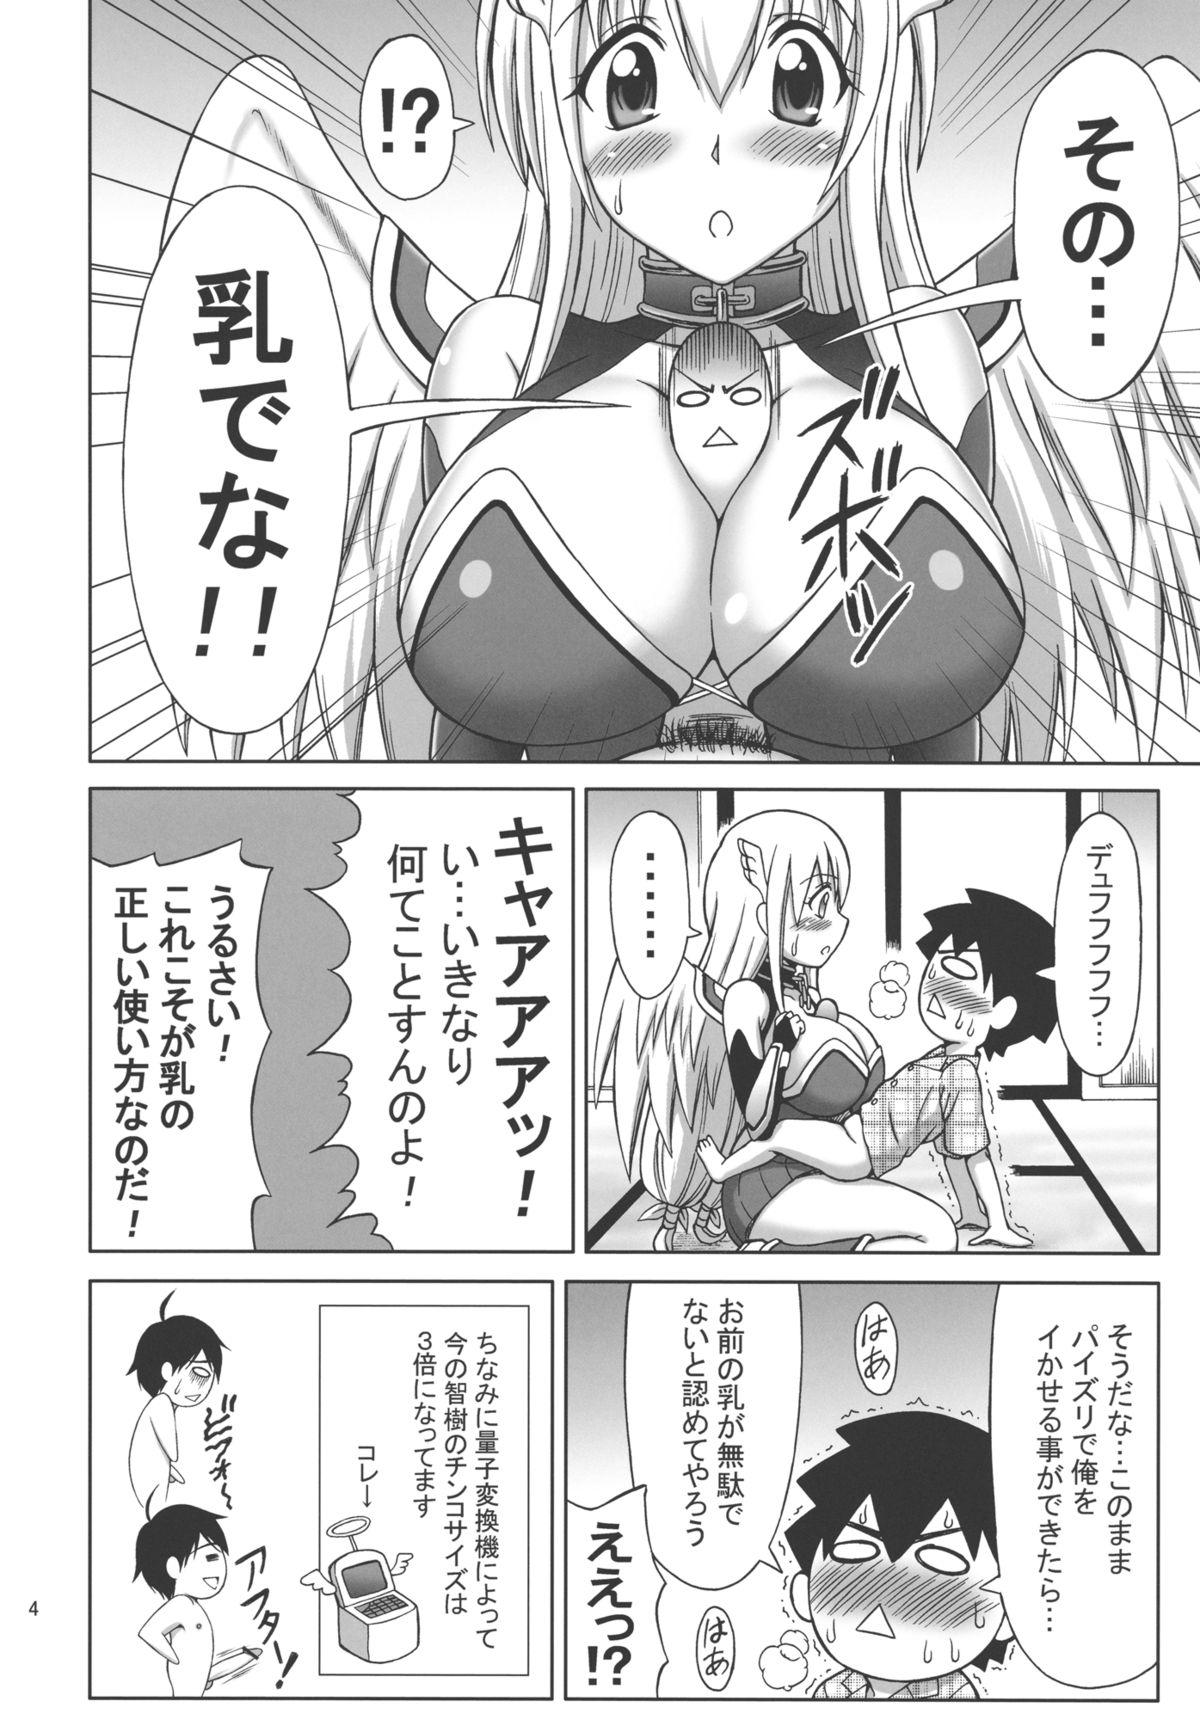 Hard Porn Mikakunin Seibutsu OO - Sora no otoshimono Hot Blow Jobs - Page 4